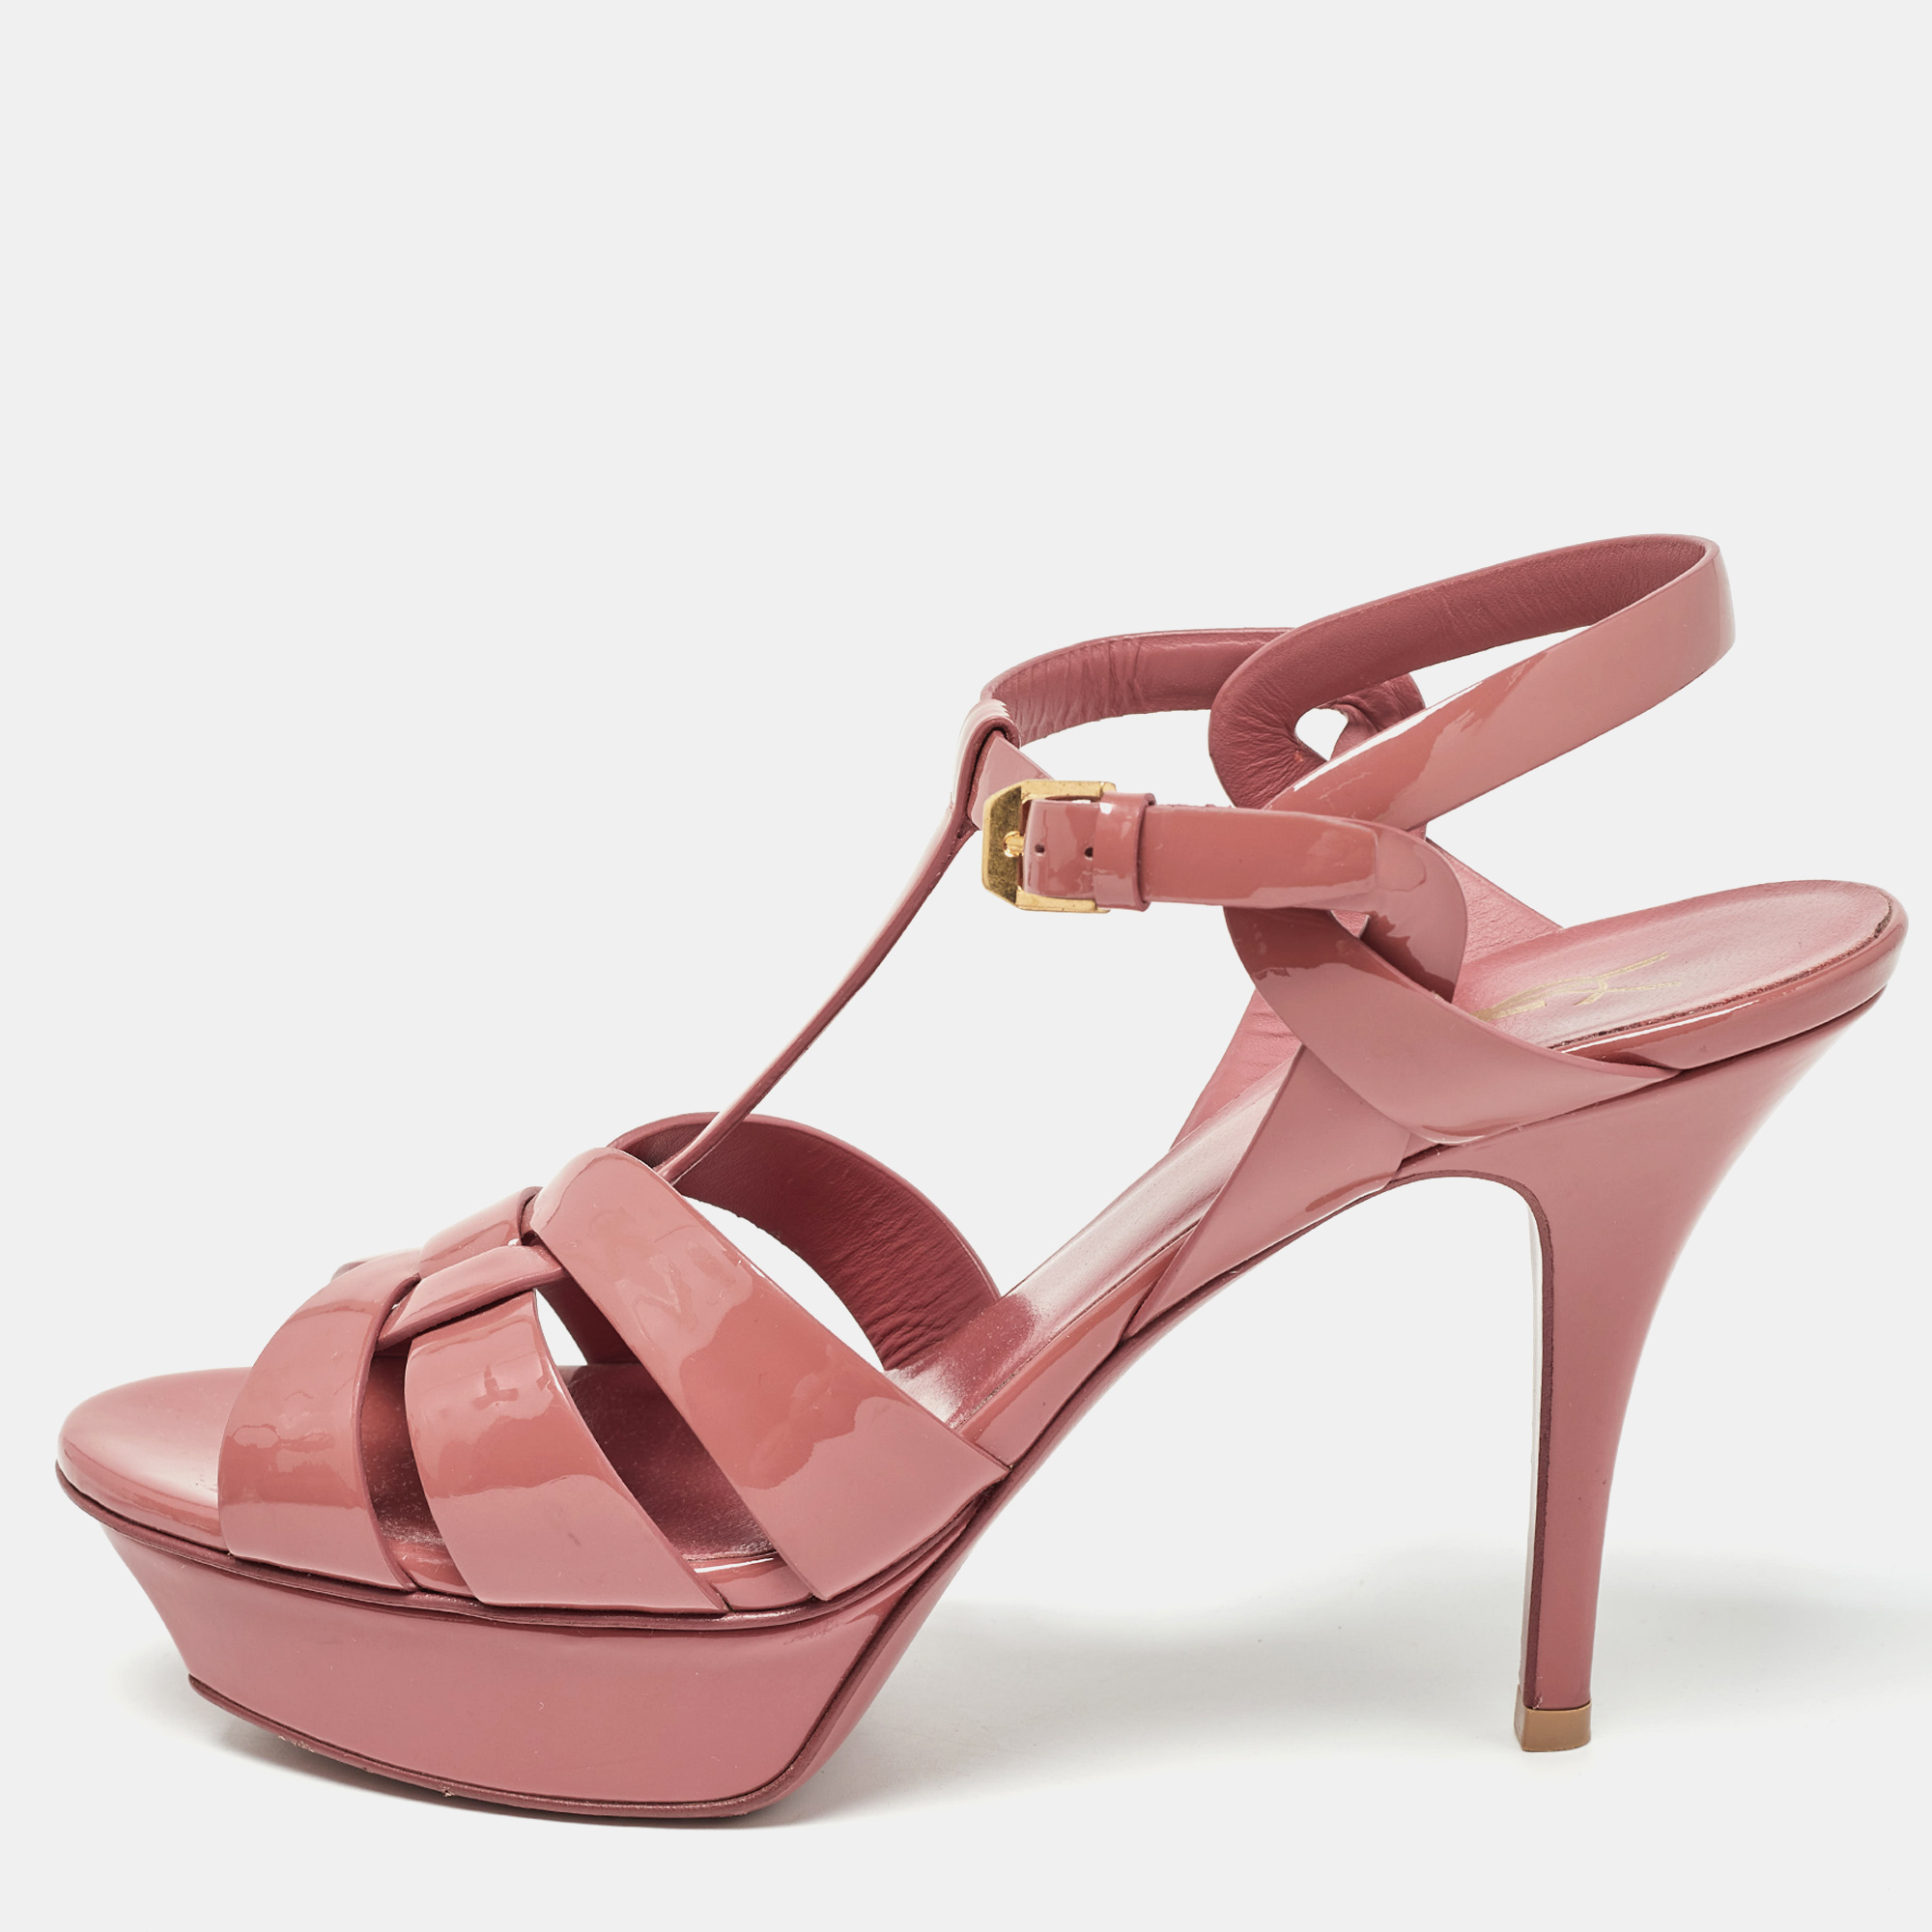 Saint laurent paris saint laurent pink patent leather tribute sandals size 39.5